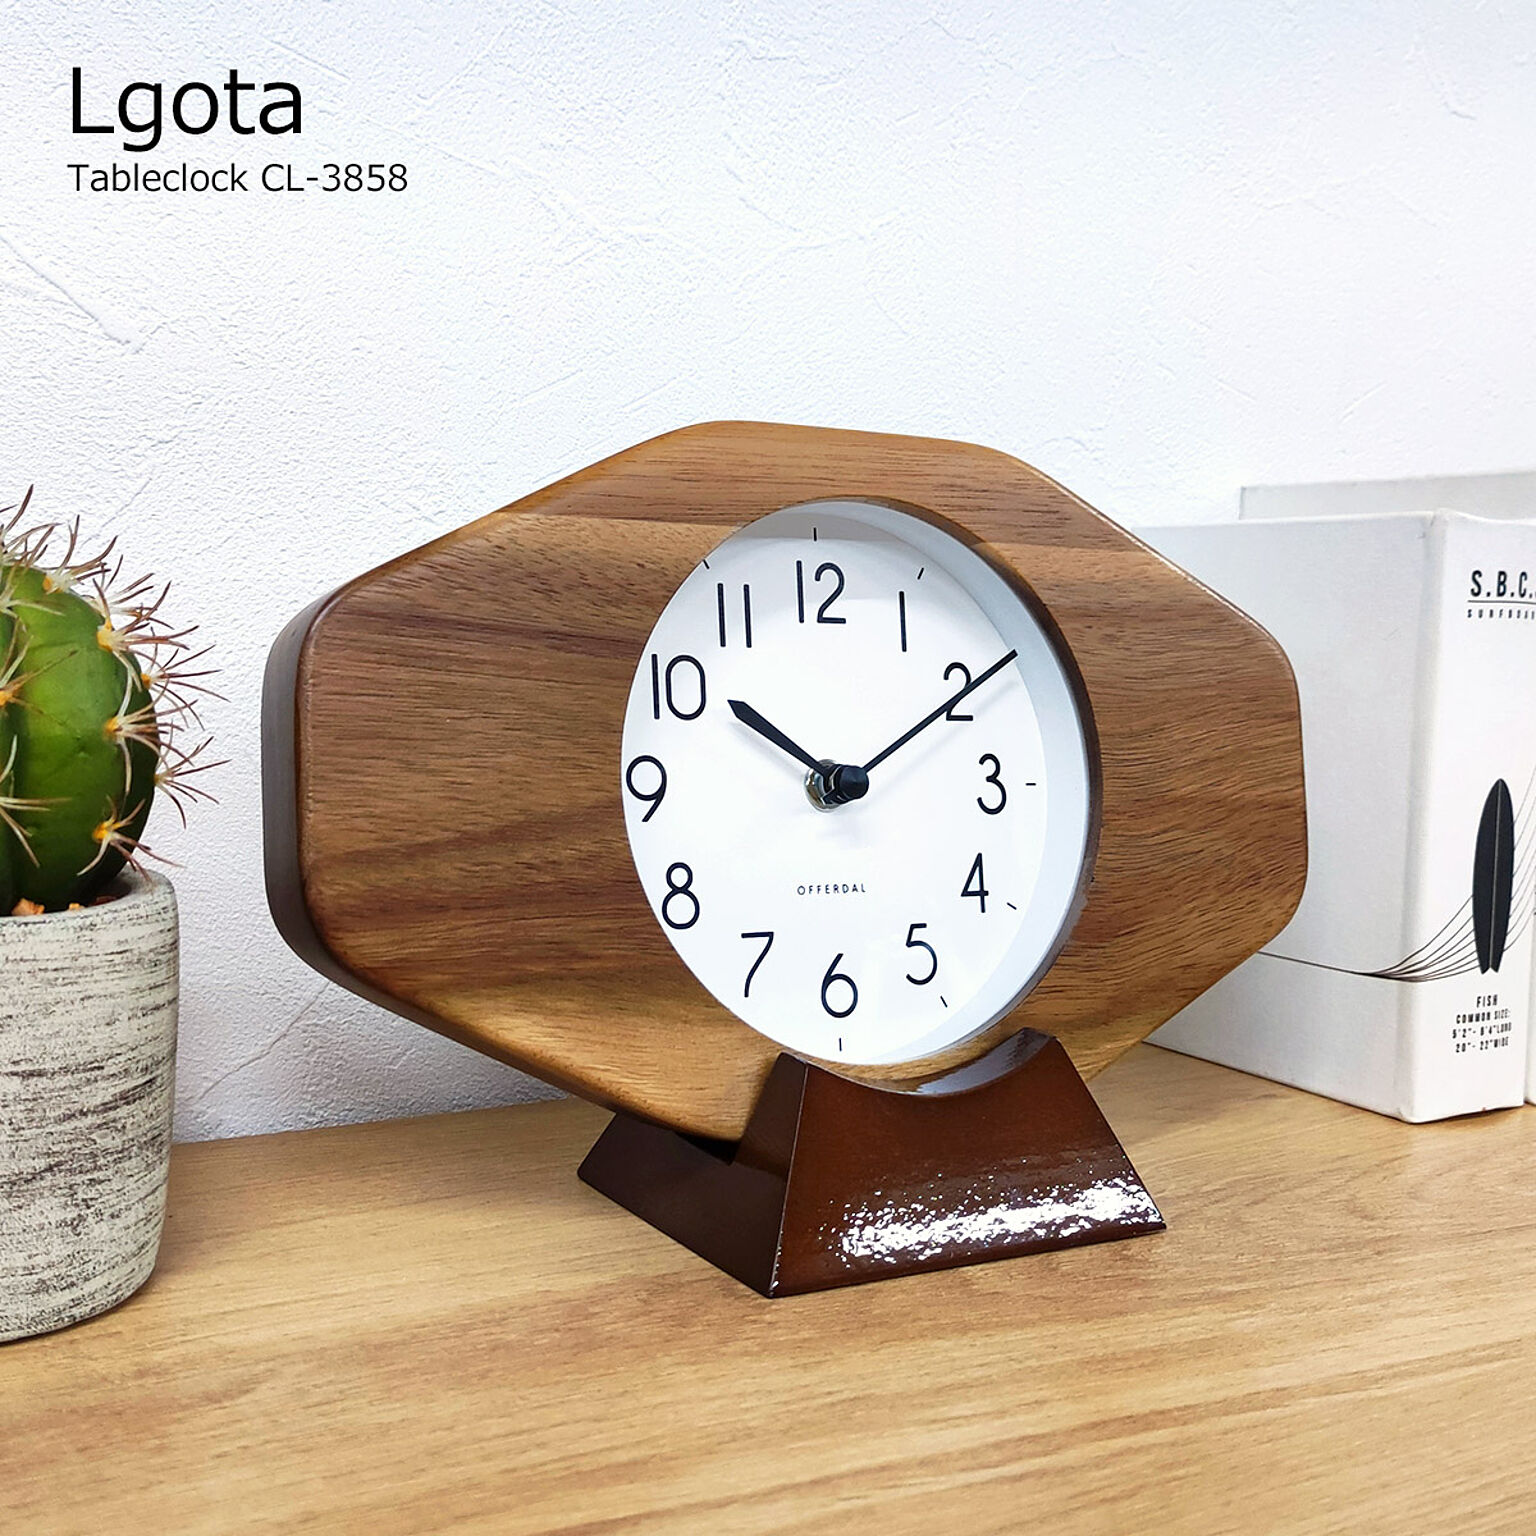 置き時計 卓上時計 おしゃれ 北欧 時計 モダン テーブルクロック ルゴタ Lgota CL-3858 シンプル 木製 書斎 寝室 子供部屋 置き掛け兼用 コンパクト レトロ インターフォルム 卓上 